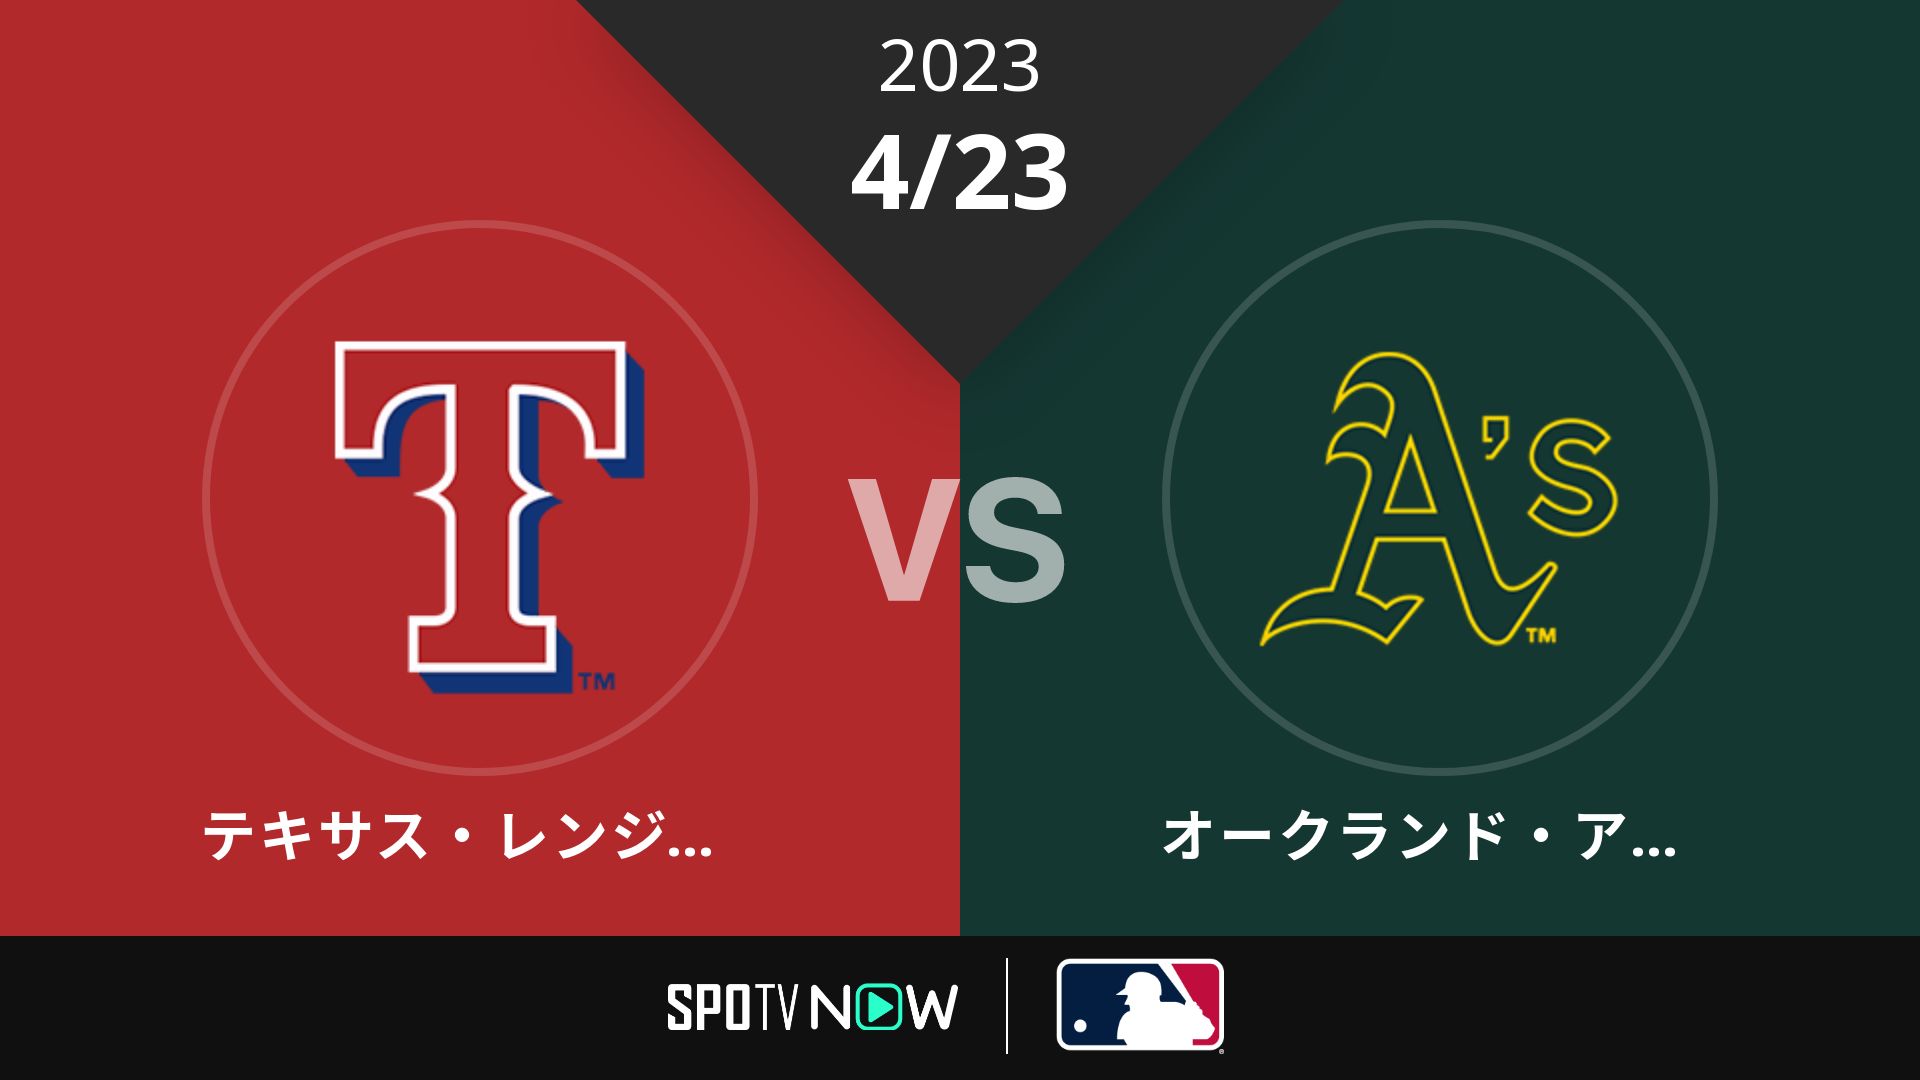 2023/4/23 レンジャーズ vs アスレチックス [MLB]